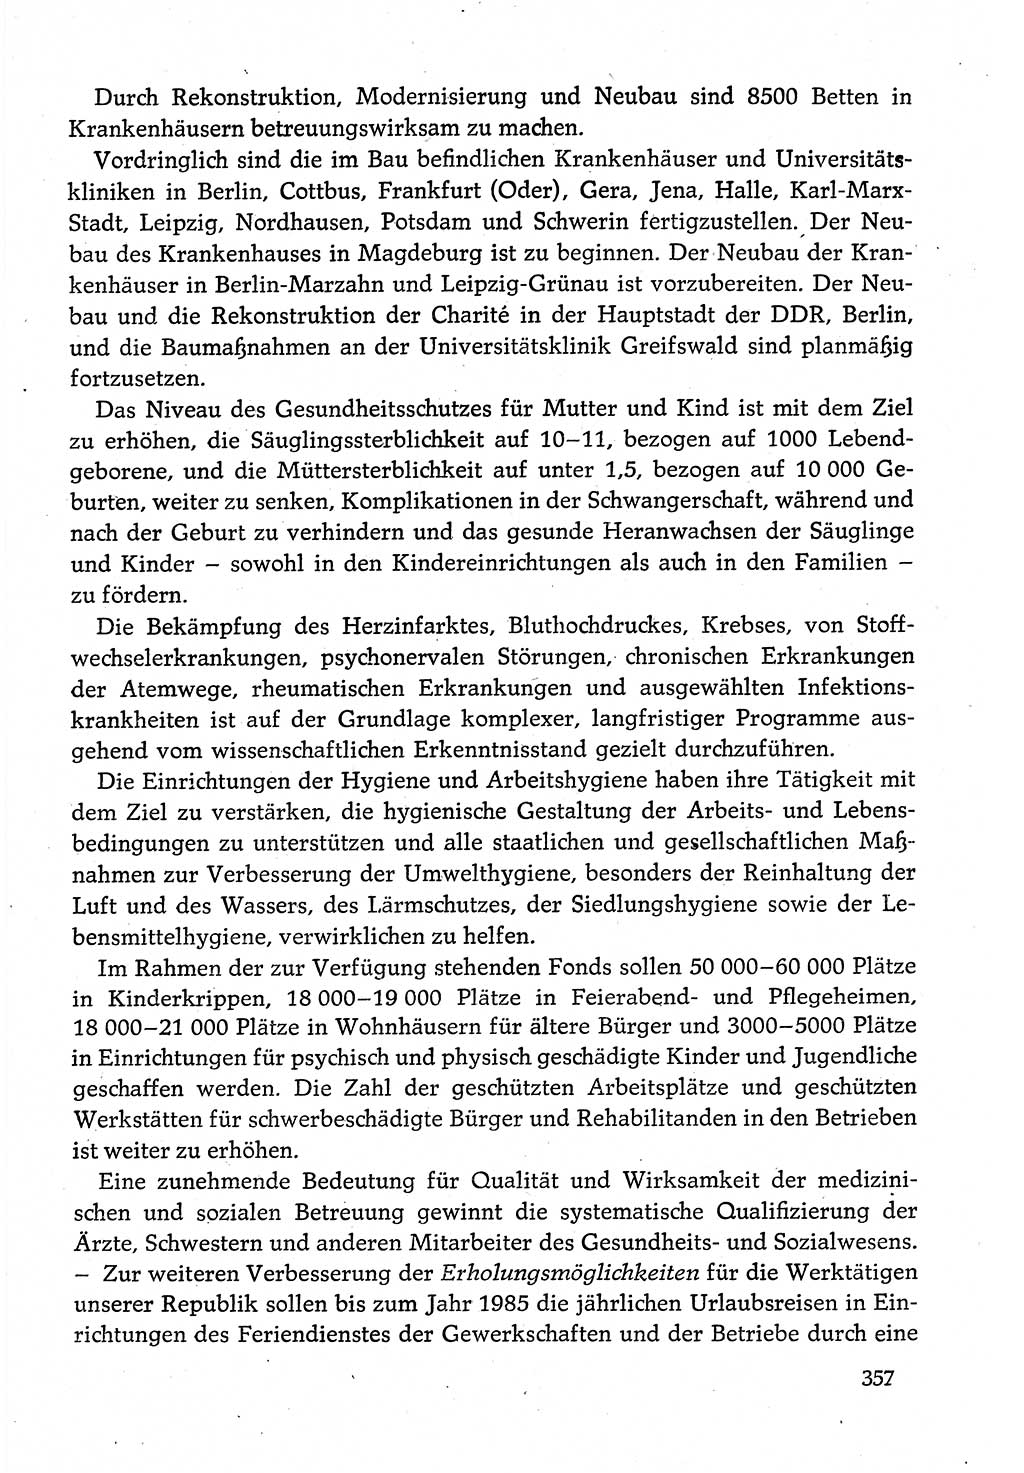 Dokumente der Sozialistischen Einheitspartei Deutschlands (SED) [Deutsche Demokratische Republik (DDR)] 1980-1981, Seite 357 (Dok. SED DDR 1980-1981, S. 357)